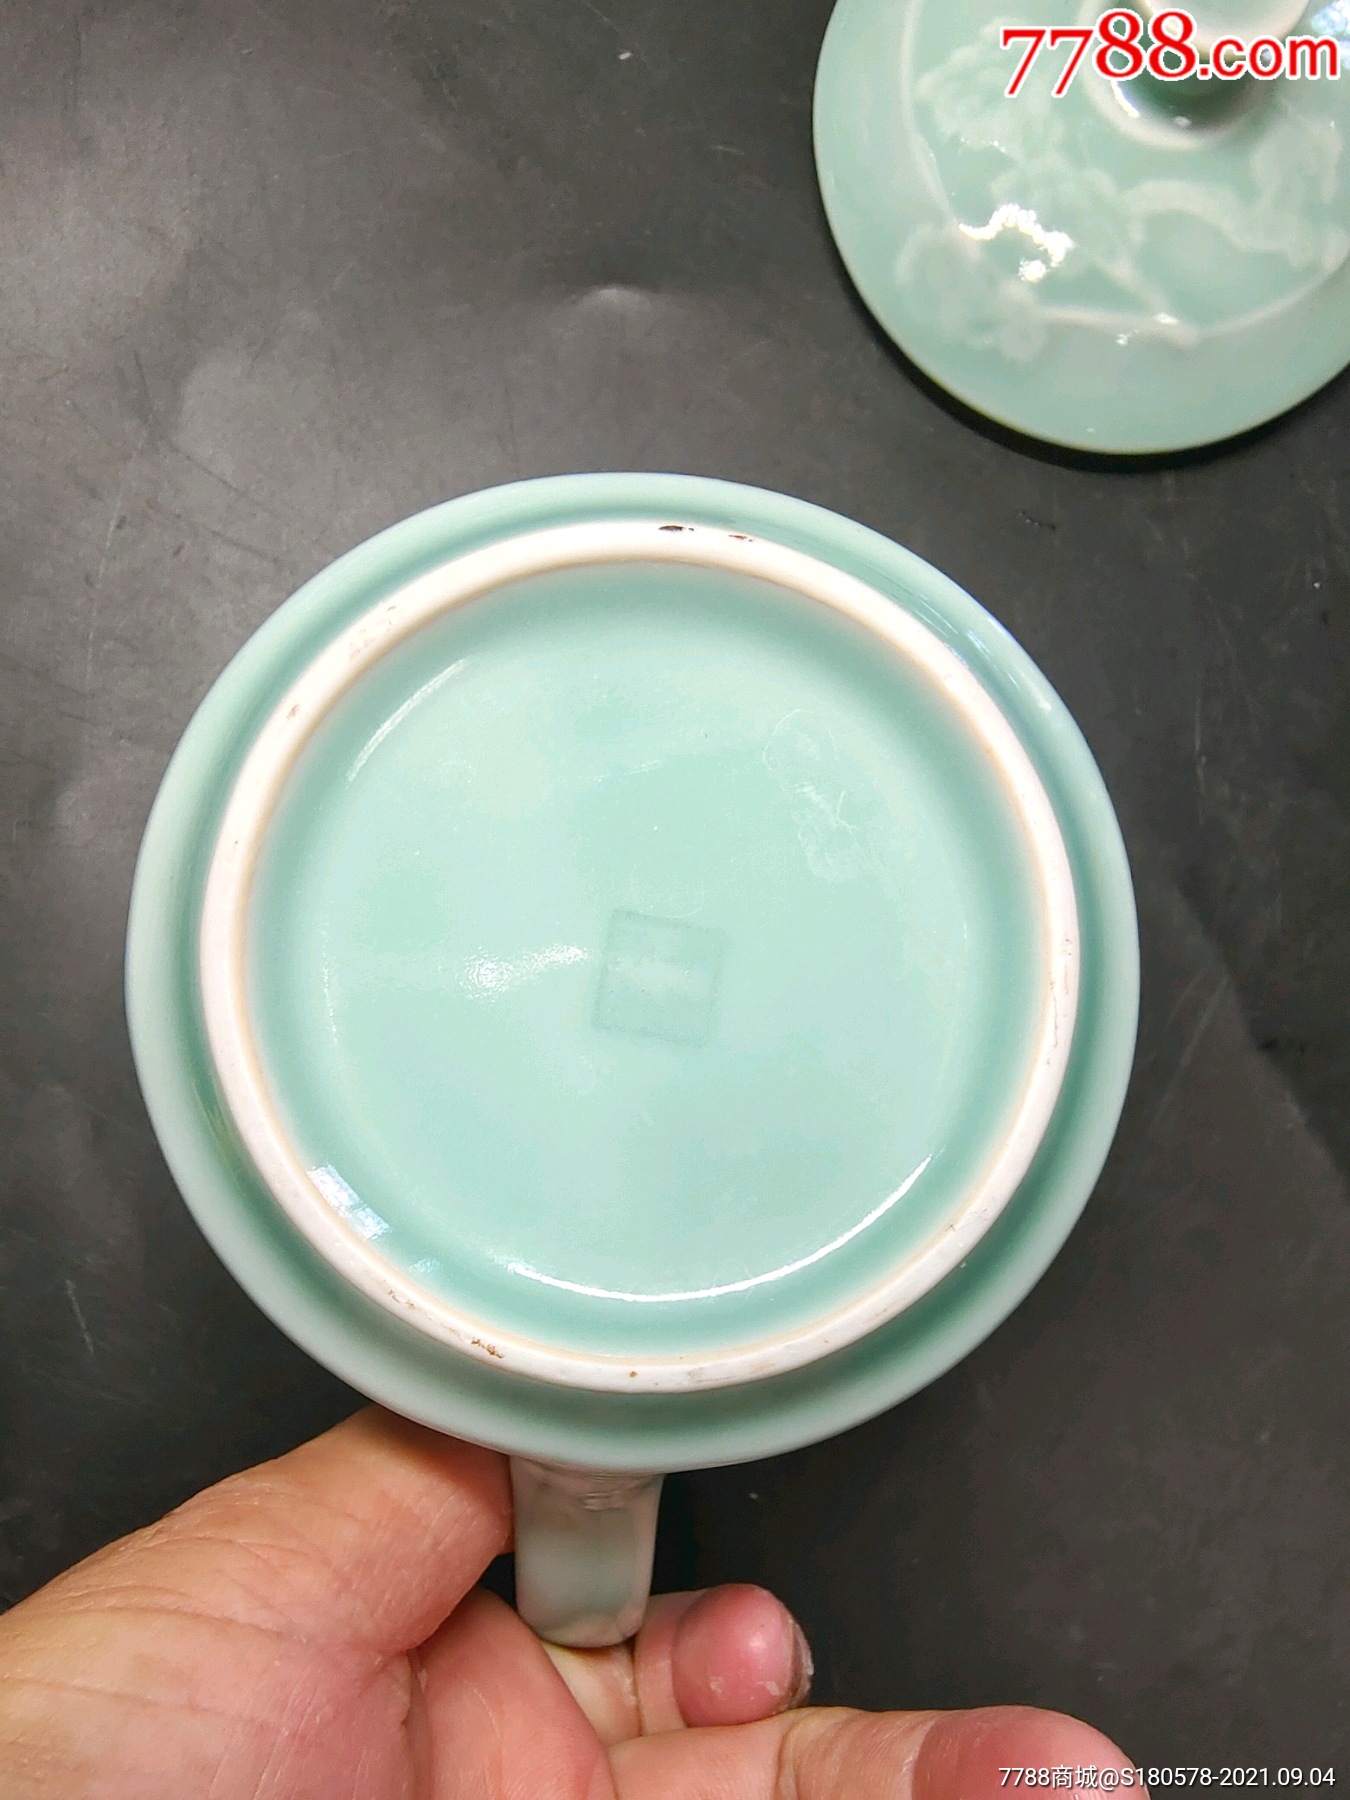 戊戌年中国龙泉底款口径9.5厘米龙泉青瓷釉下图松鹤对图盖把杯一套